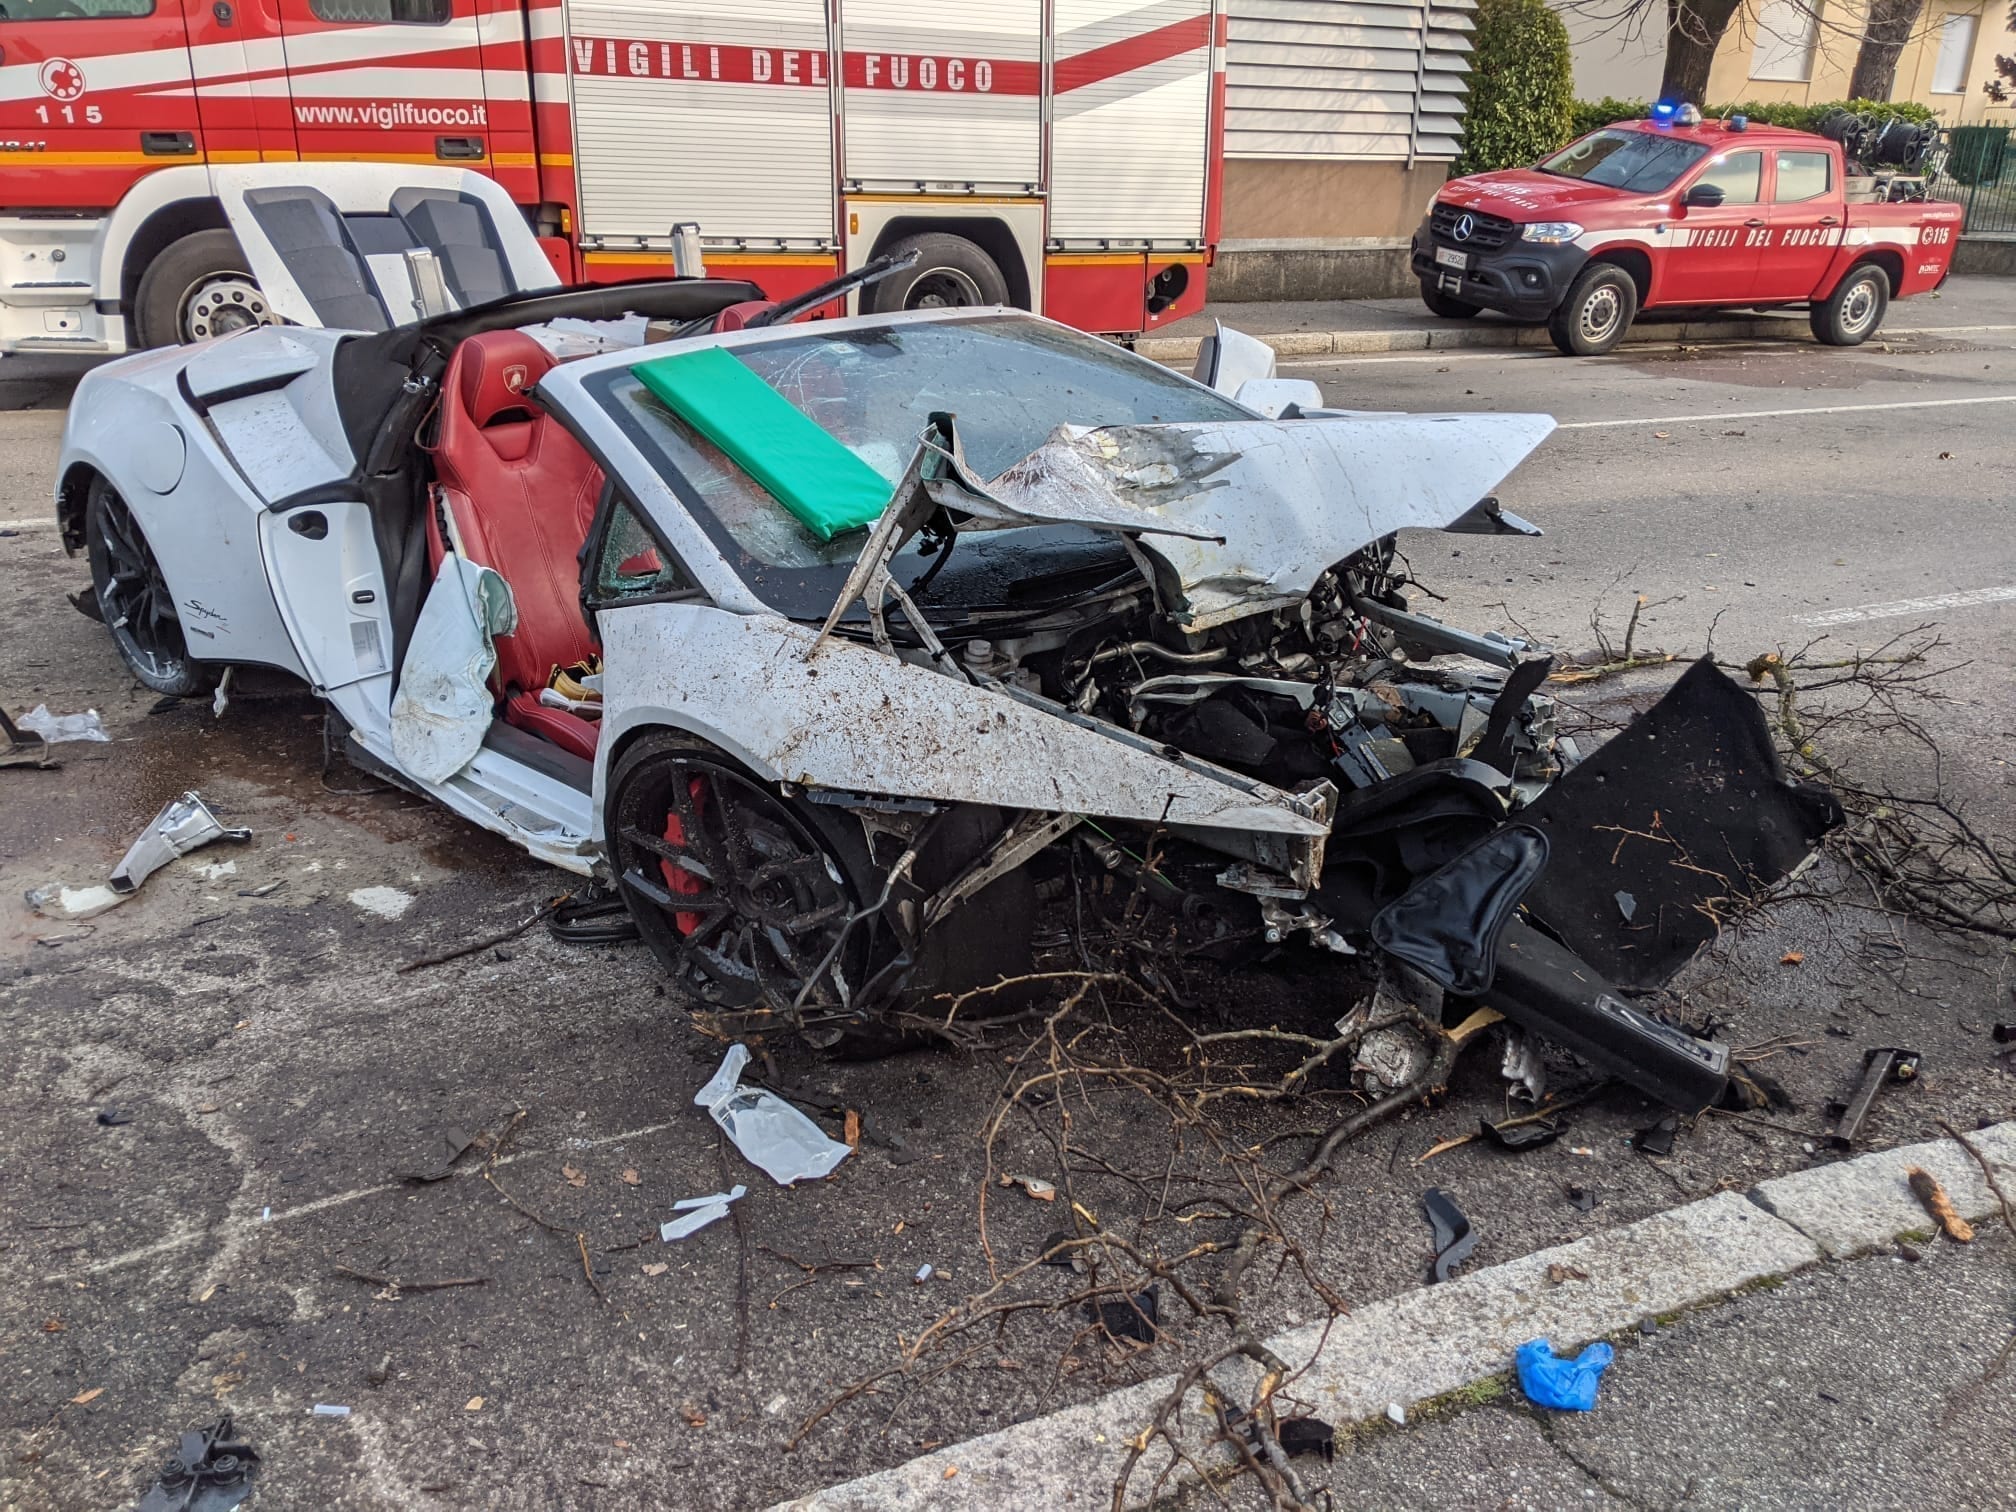 Ieri su ilS: disastroso incidente per una Lamborghini, quaresima coi coriandoli, lite per un parcheggio e qualche indizio su Fus